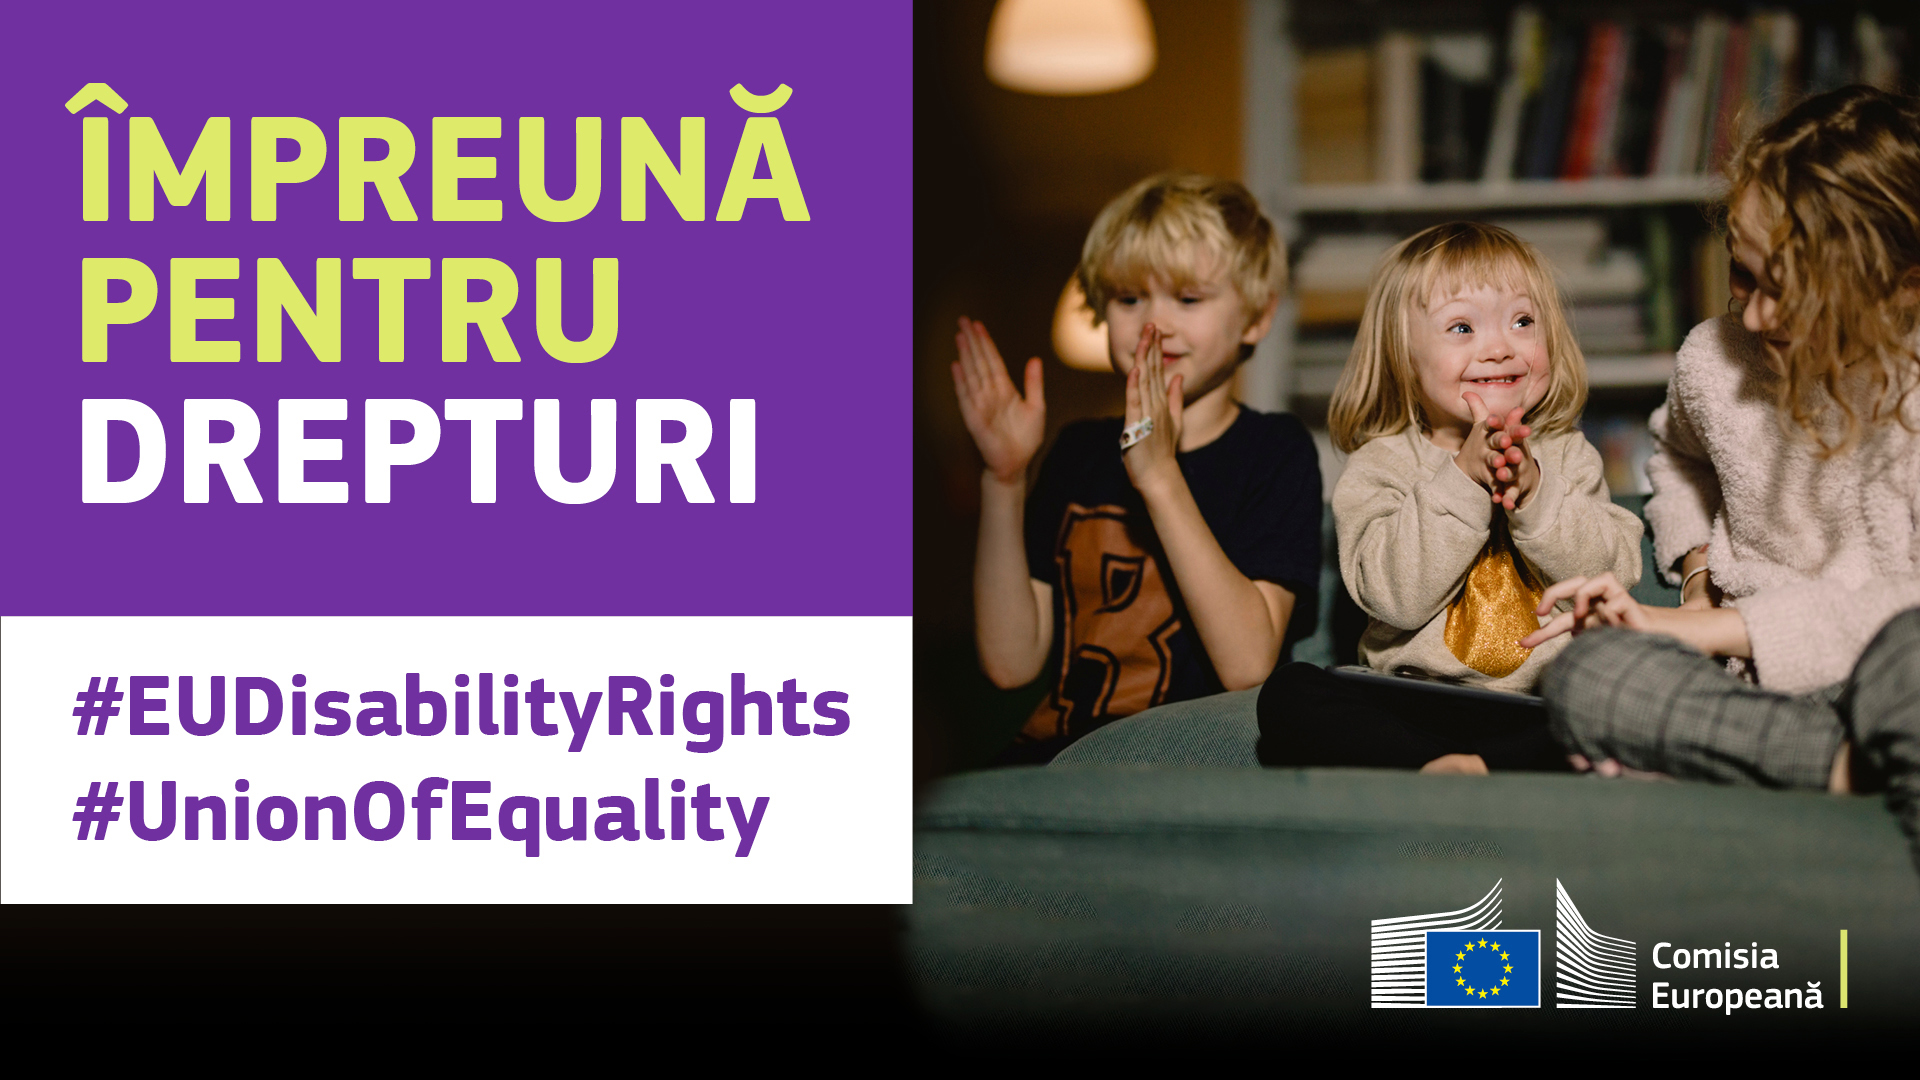 Trei copii jucându-se bucuroși împreună. Unul are sindromul Down. Text: împreună pentru drepturi, #EUDisabilityRights, #UnionOfEquality.